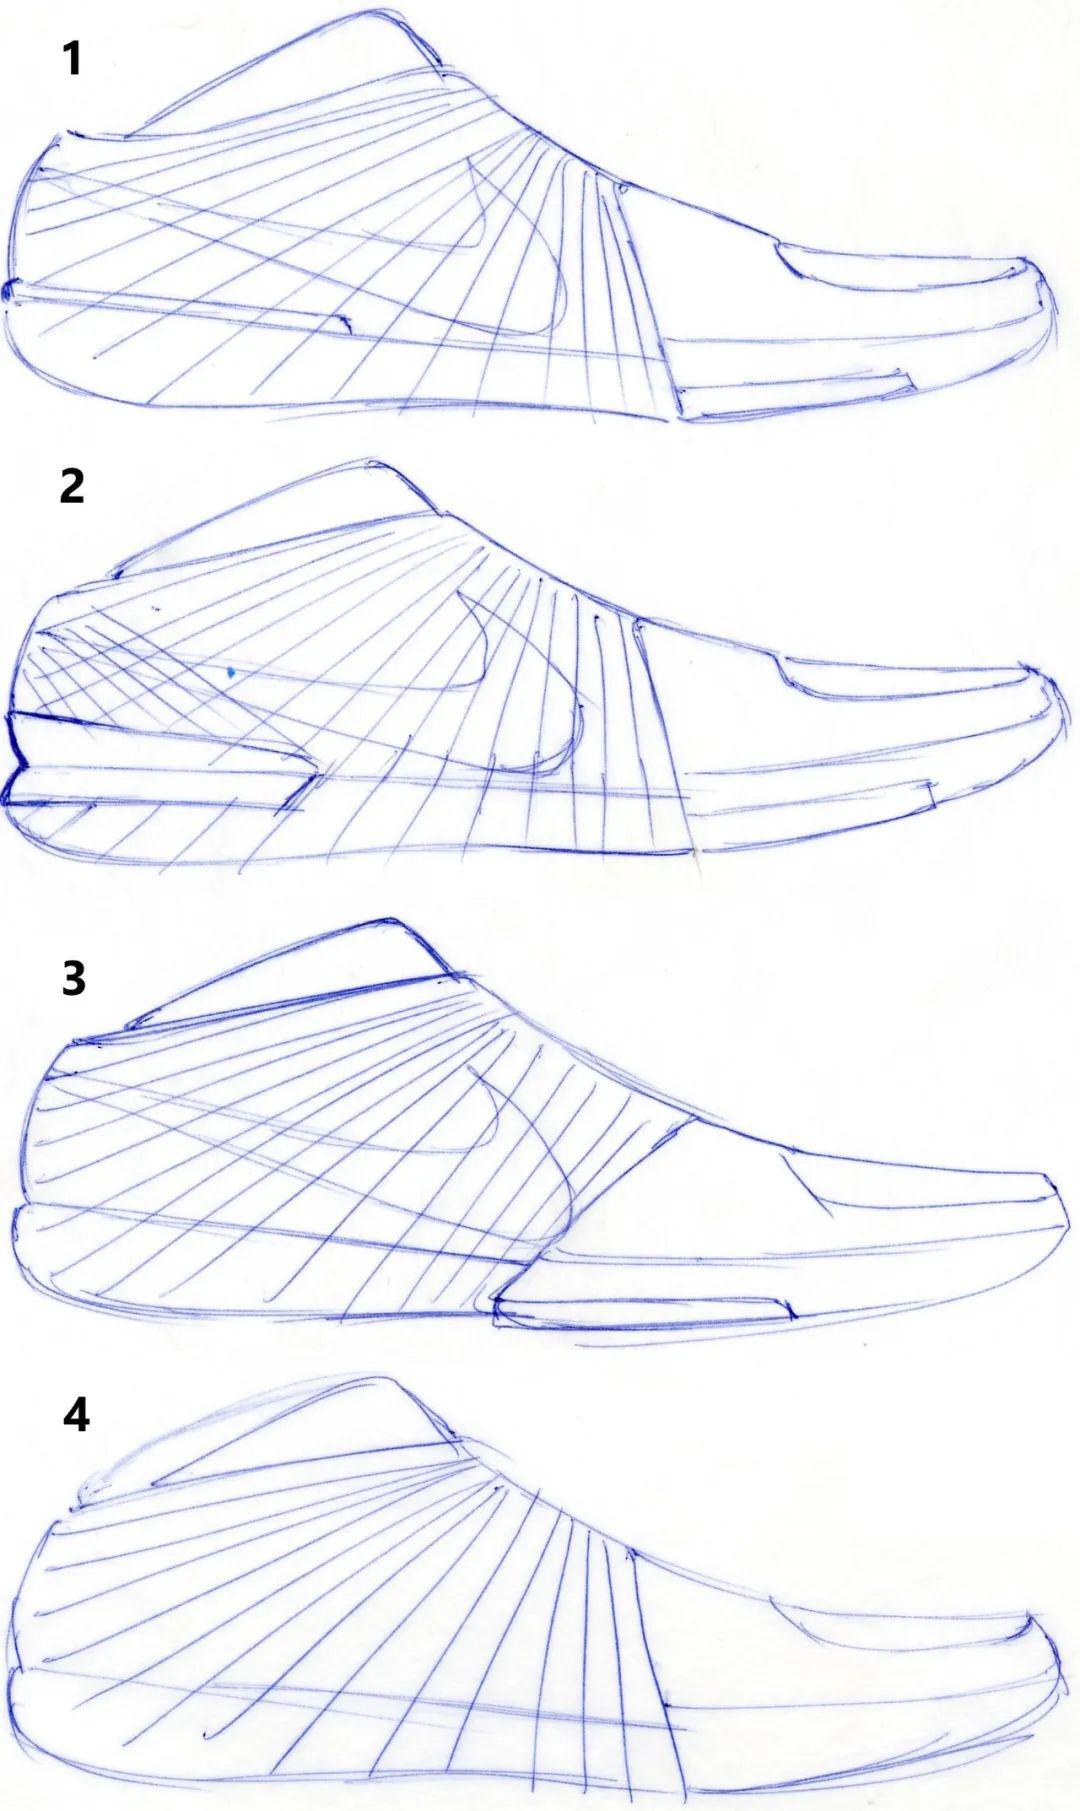 科比球鞋素描图片